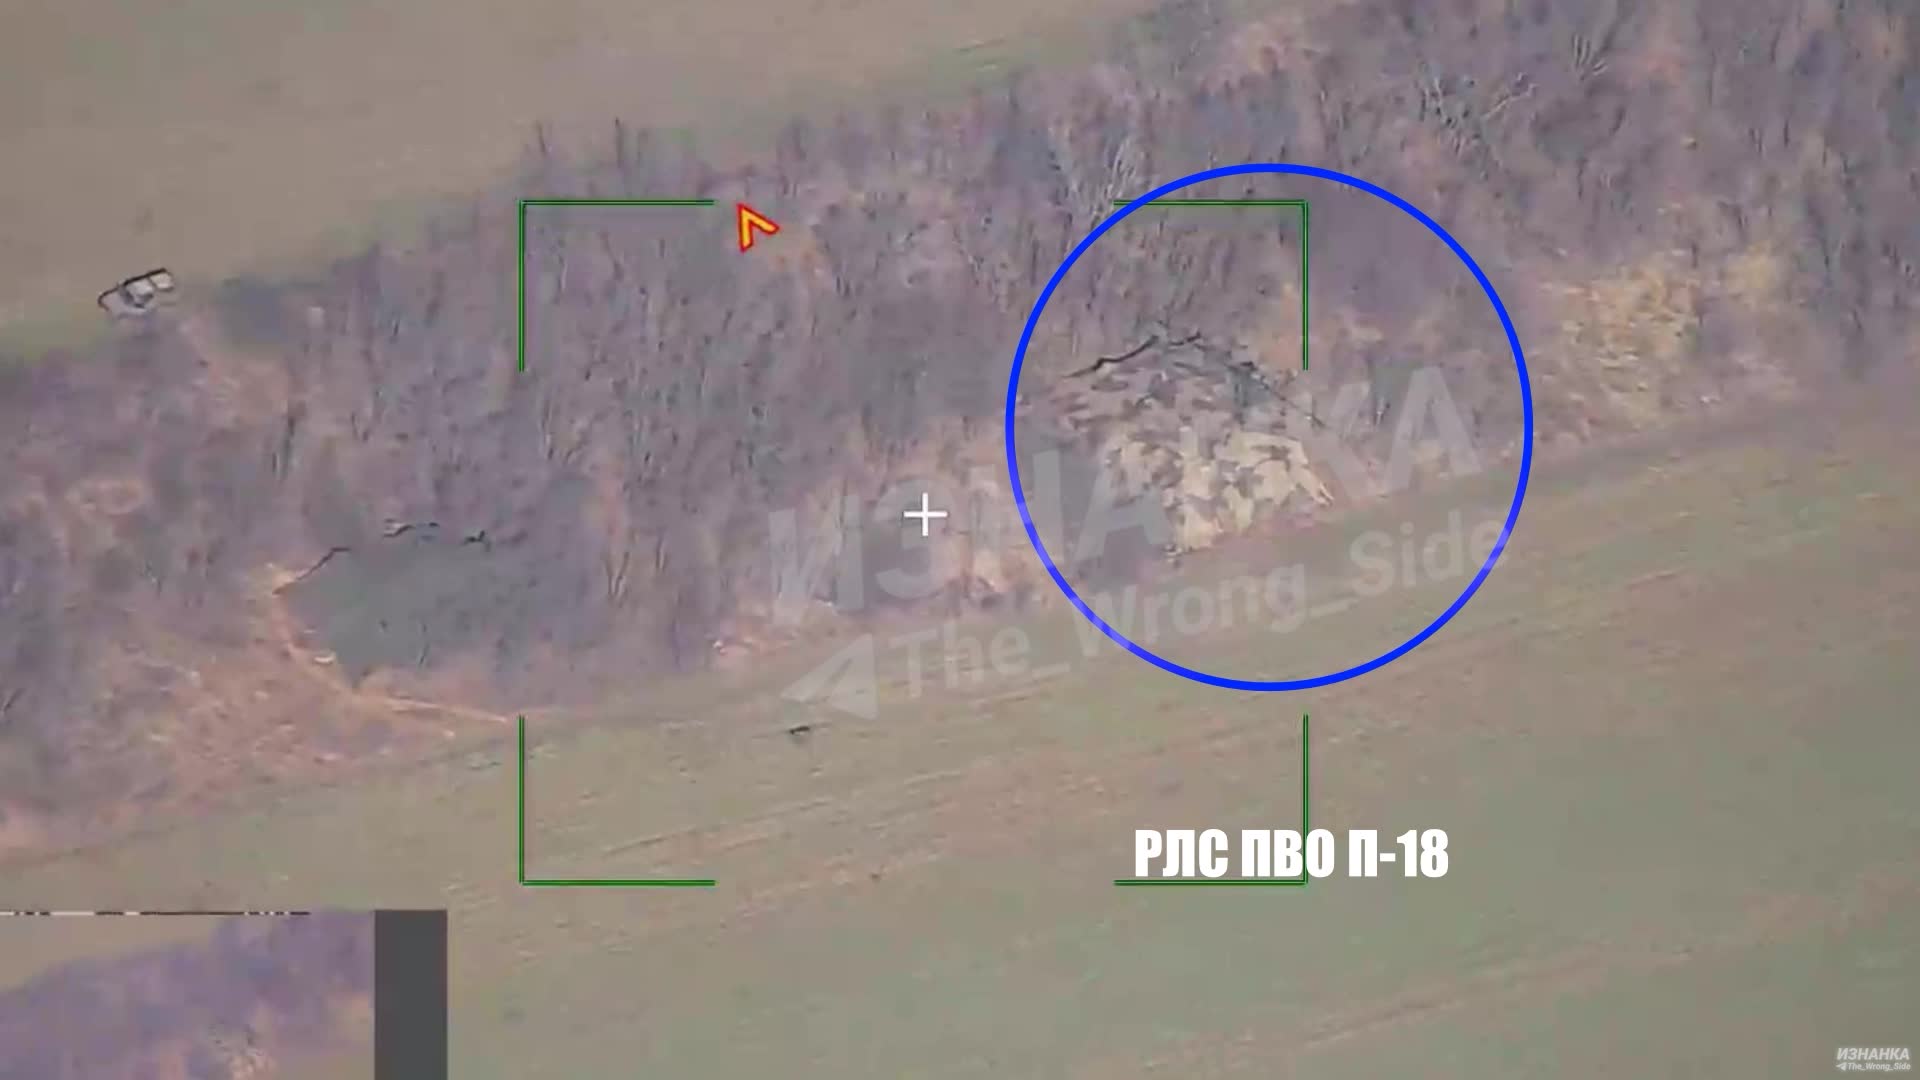 Thế giới - Khoảnh khắc tên lửa dẫn đường Nga tấn công, hệ thống P-18 của Ukraine nổ tung, bốc cháy dữ dội